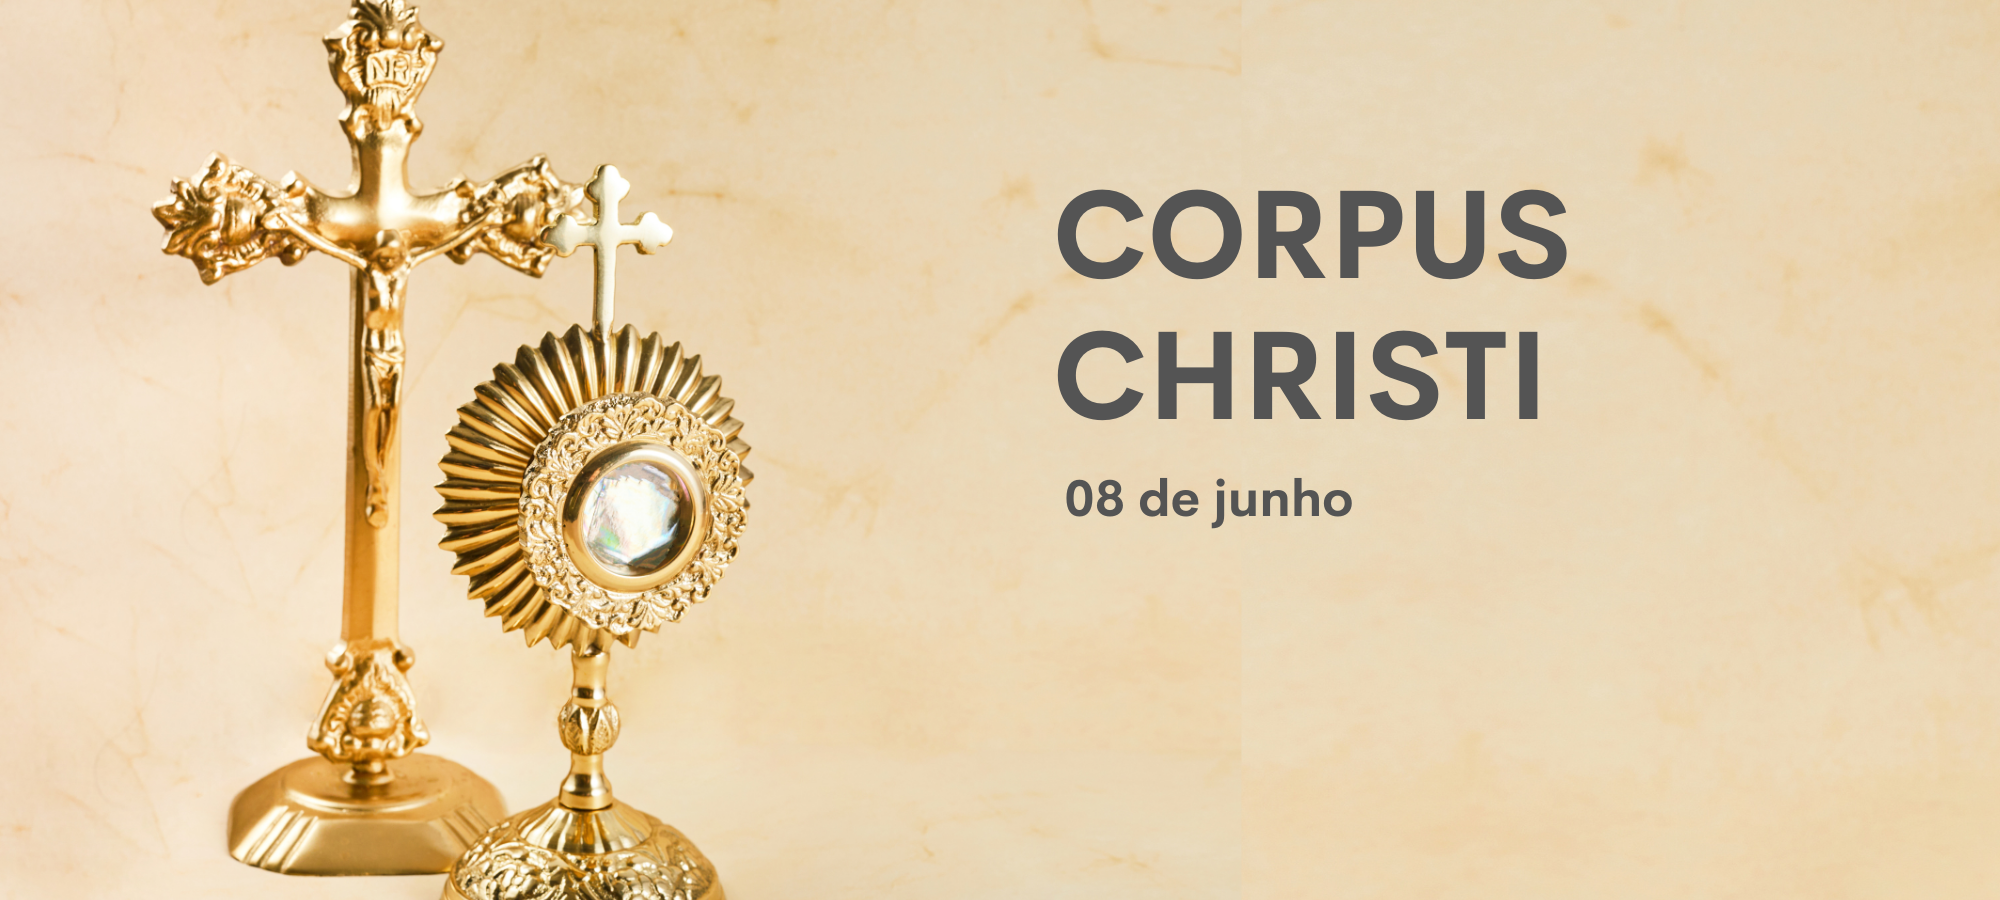  Je, siku ya Corpus Christi inachukuliwa kuwa likizo nchini Brazili au la?